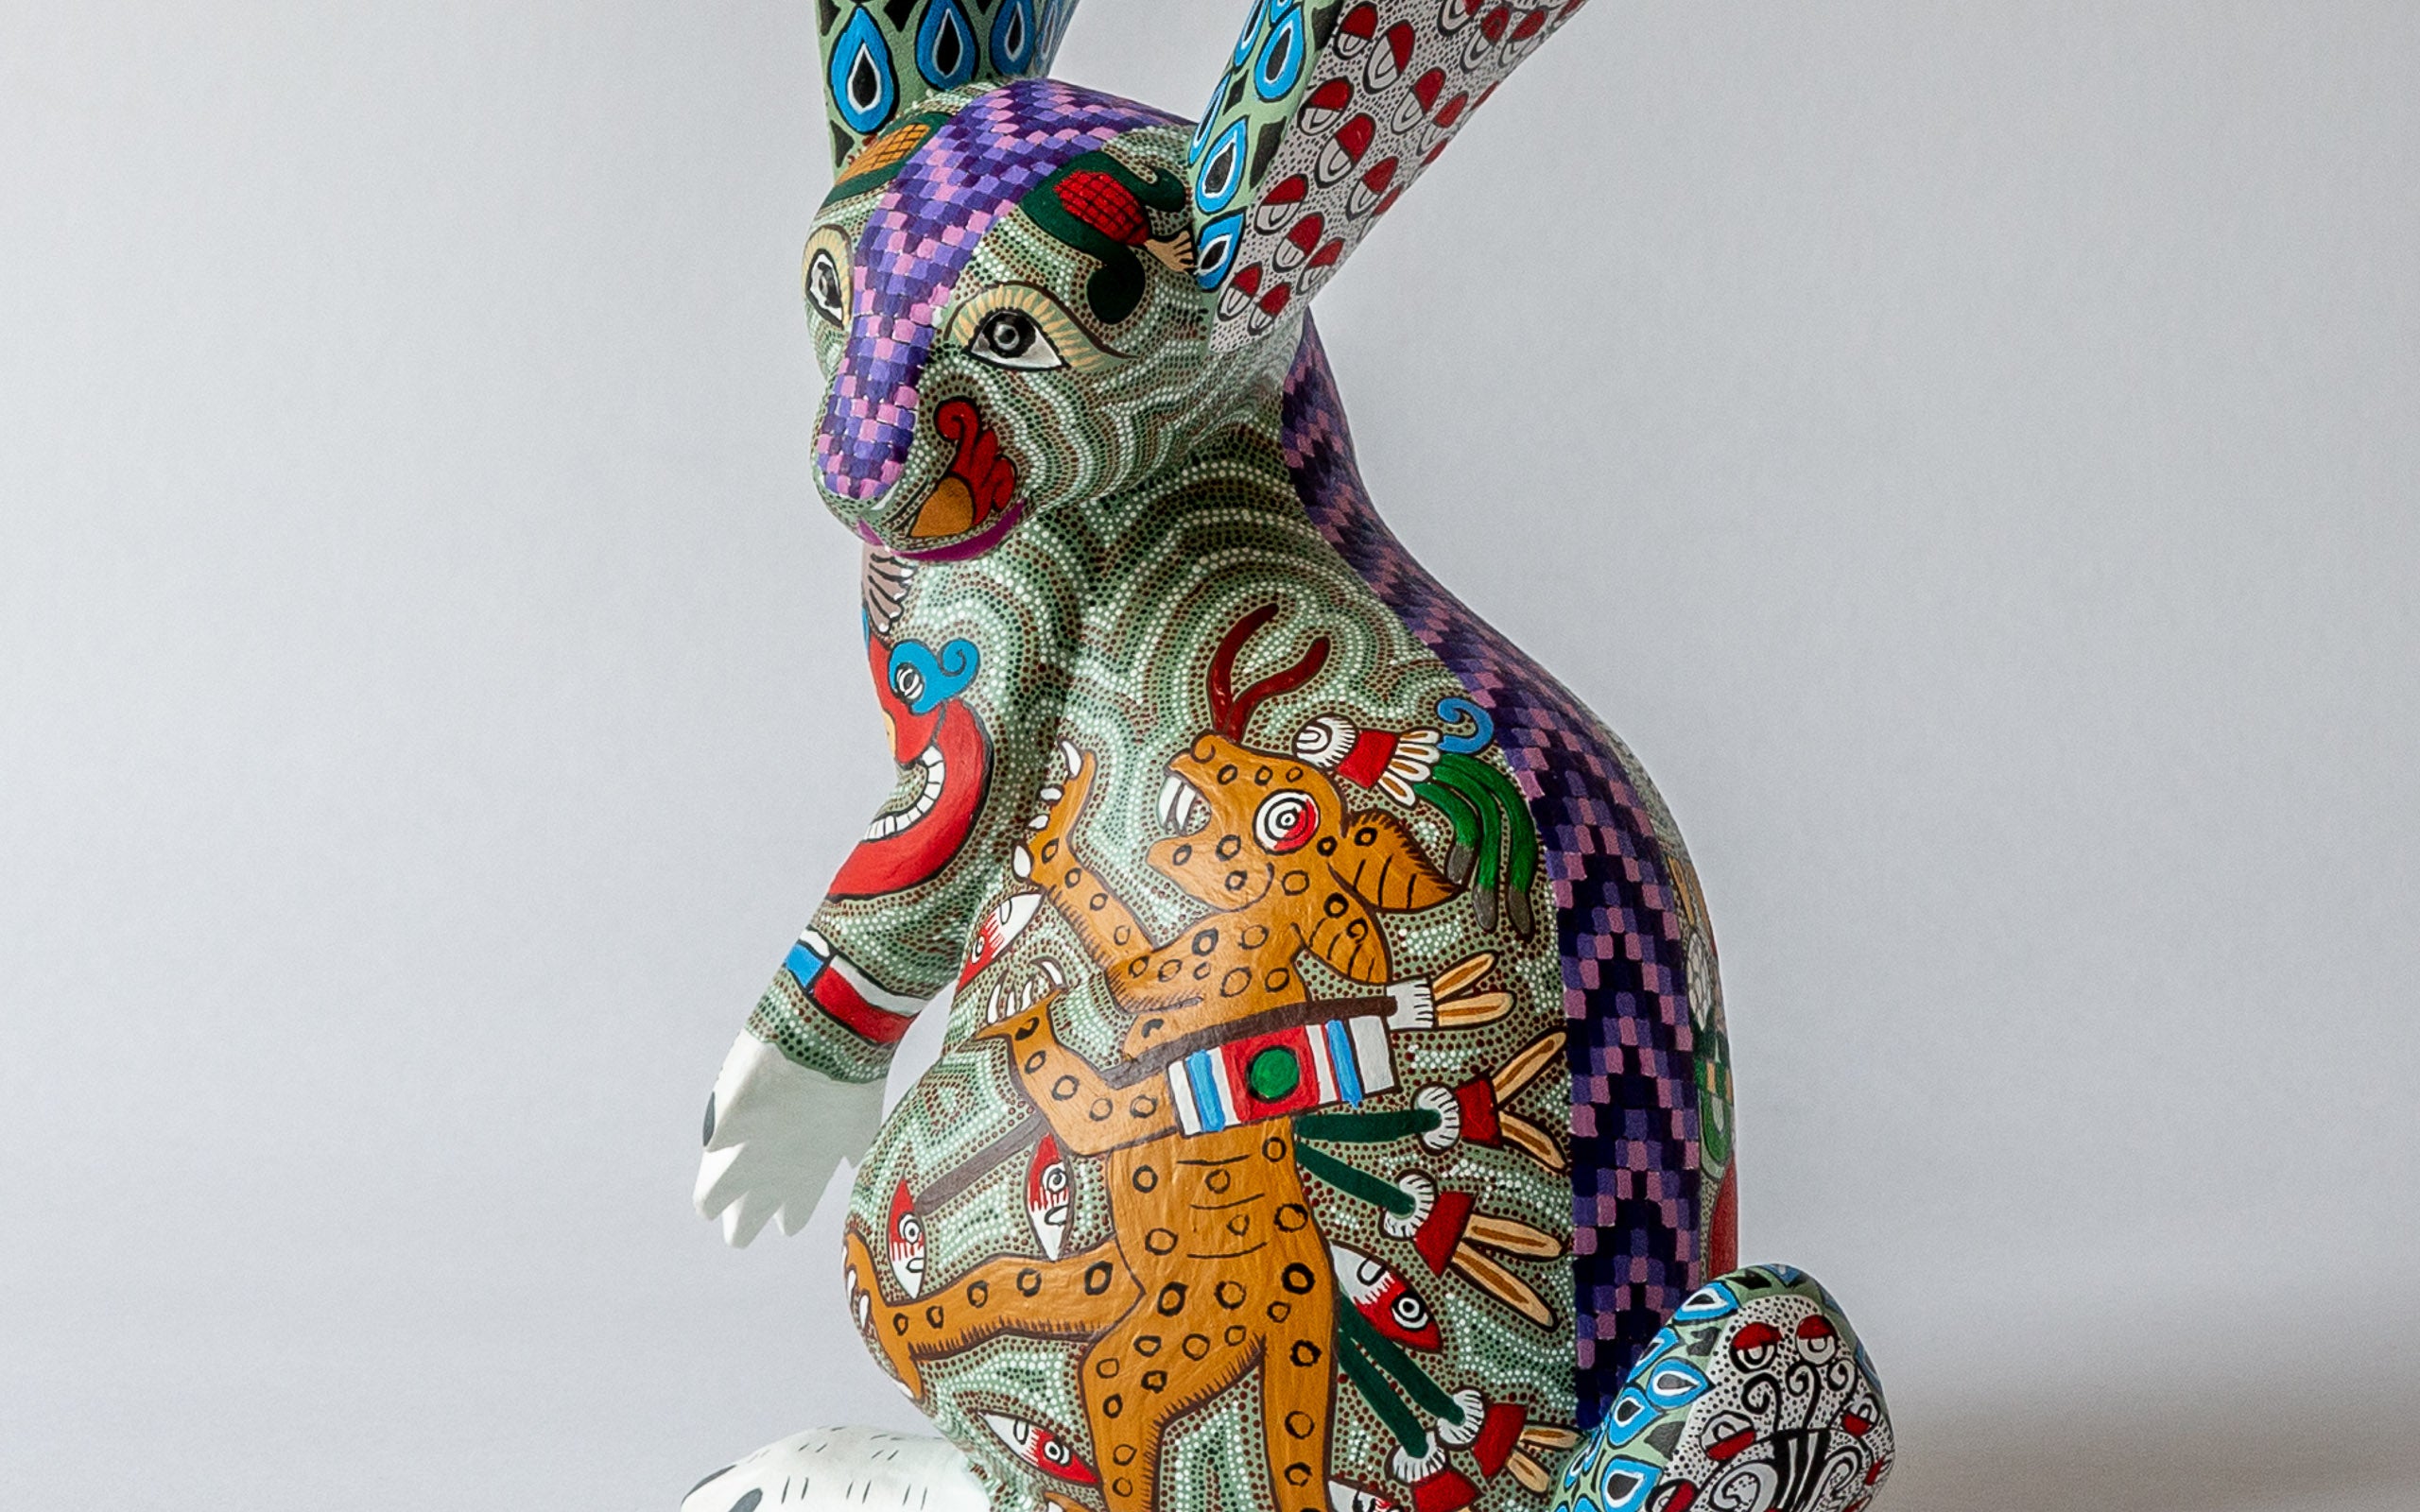 Zapoteken Hase: Detail der Bemalug mit zapotekischen Motiven, Bertha Cruz Morales.